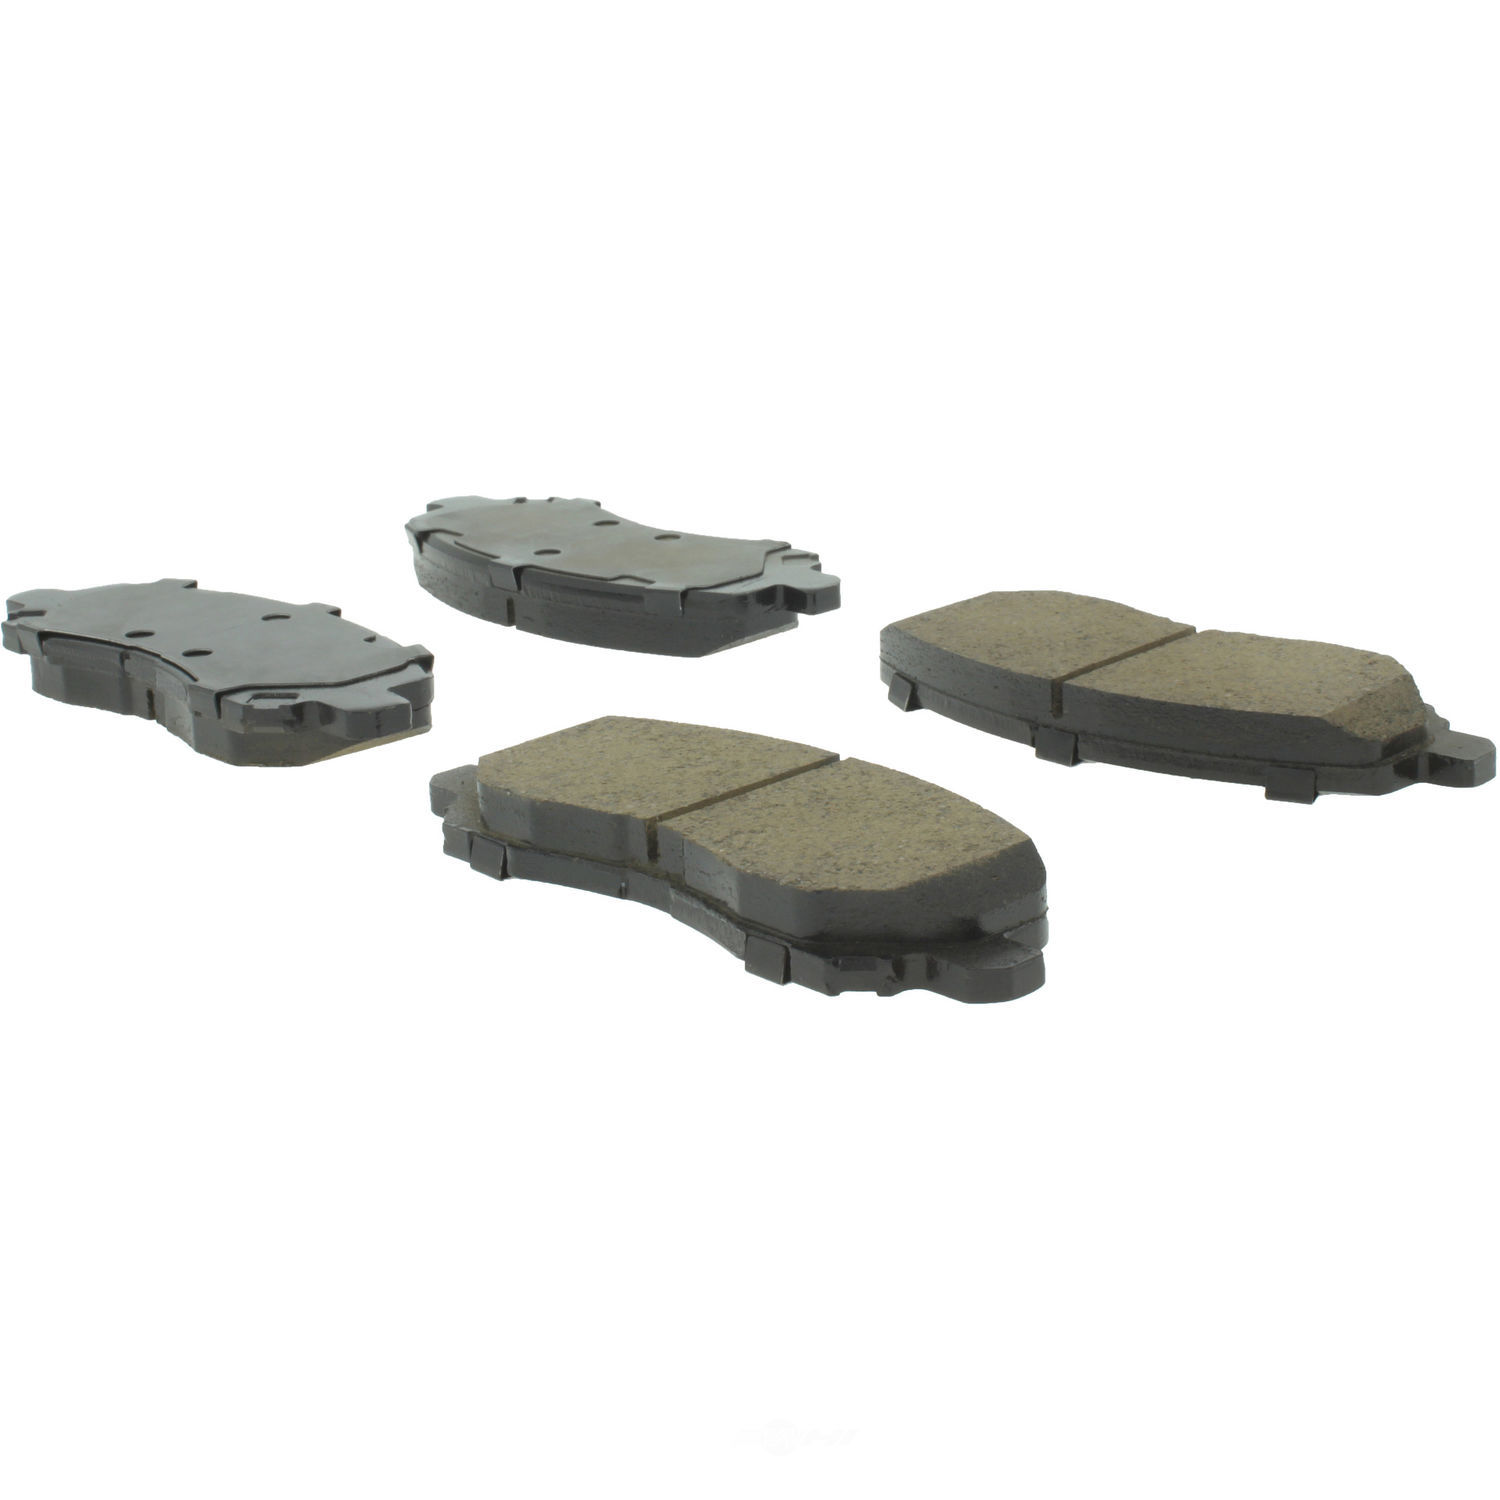 CENTRIC PARTS - Centric Premium Ceramic Disc Brake Pad Sets - CEC 301.08660